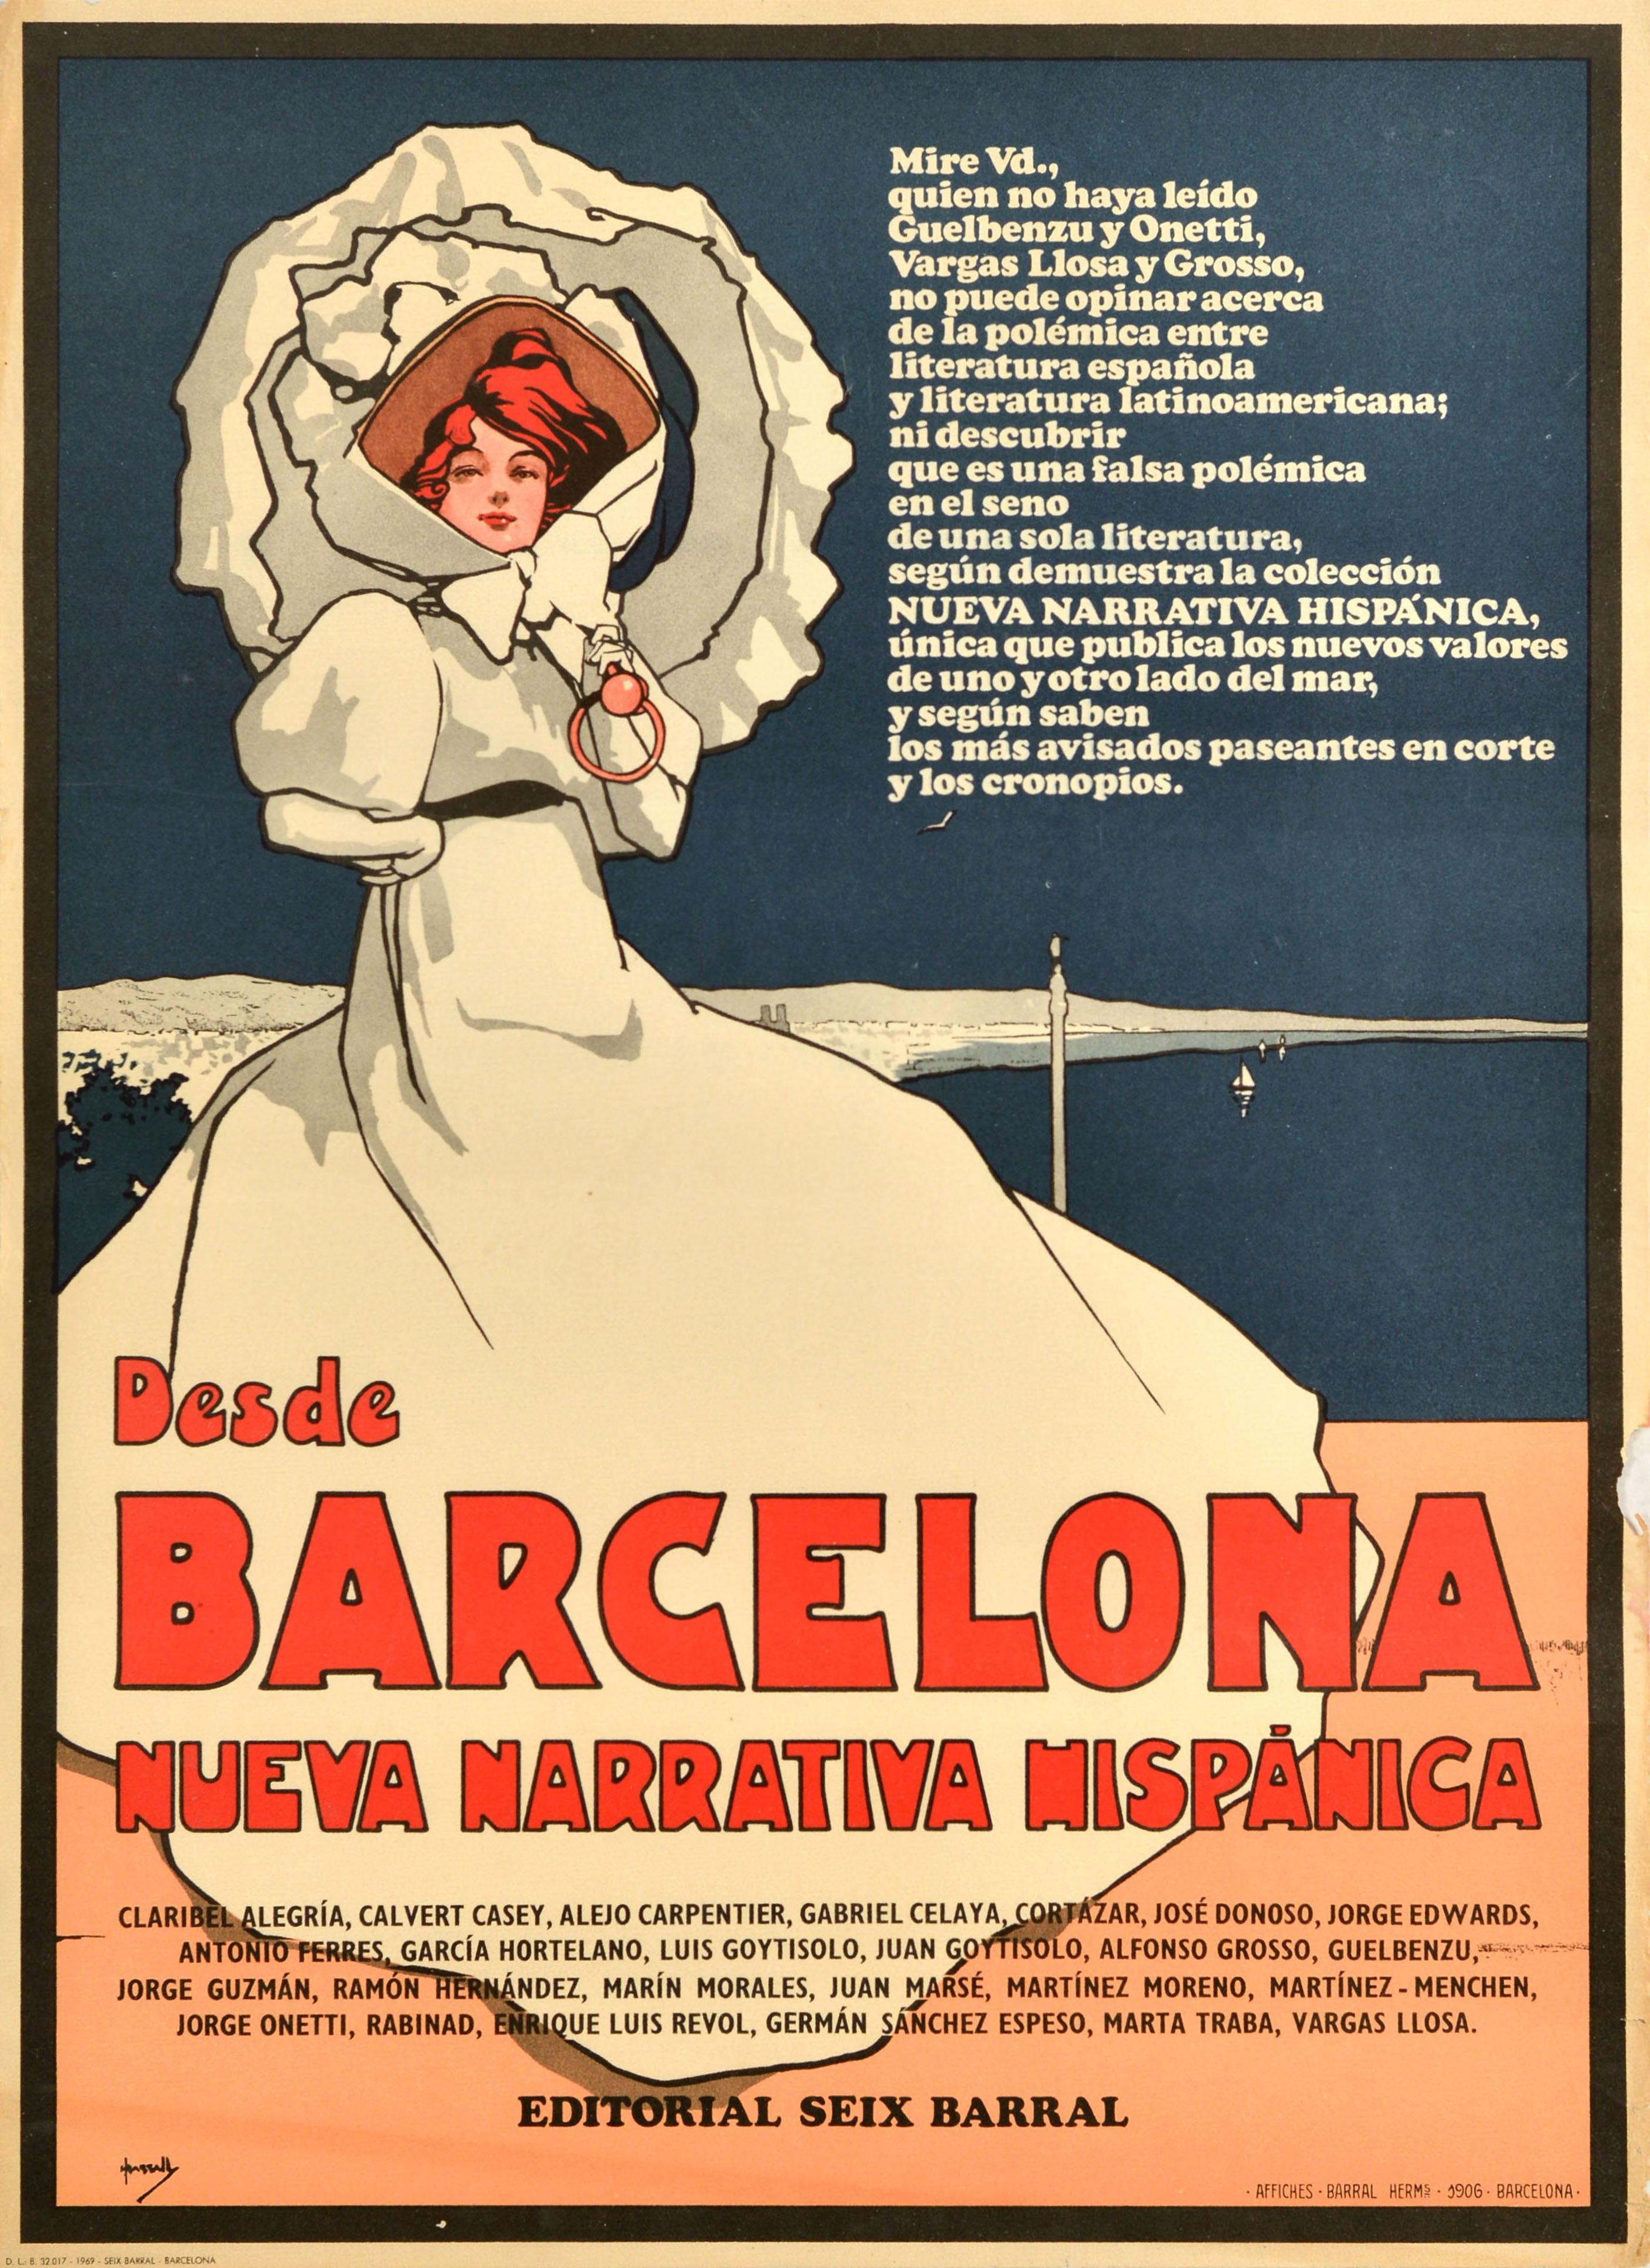 Affiche publicitaire vintage originale reprenant l'œuvre d'art de l'affiche de 1906 illustrée par le célèbre artiste John Hassall (1868-1948) représentant une dame victorienne élégamment vêtue d'une longue robe blanche et d'un chapeau blanc avec un